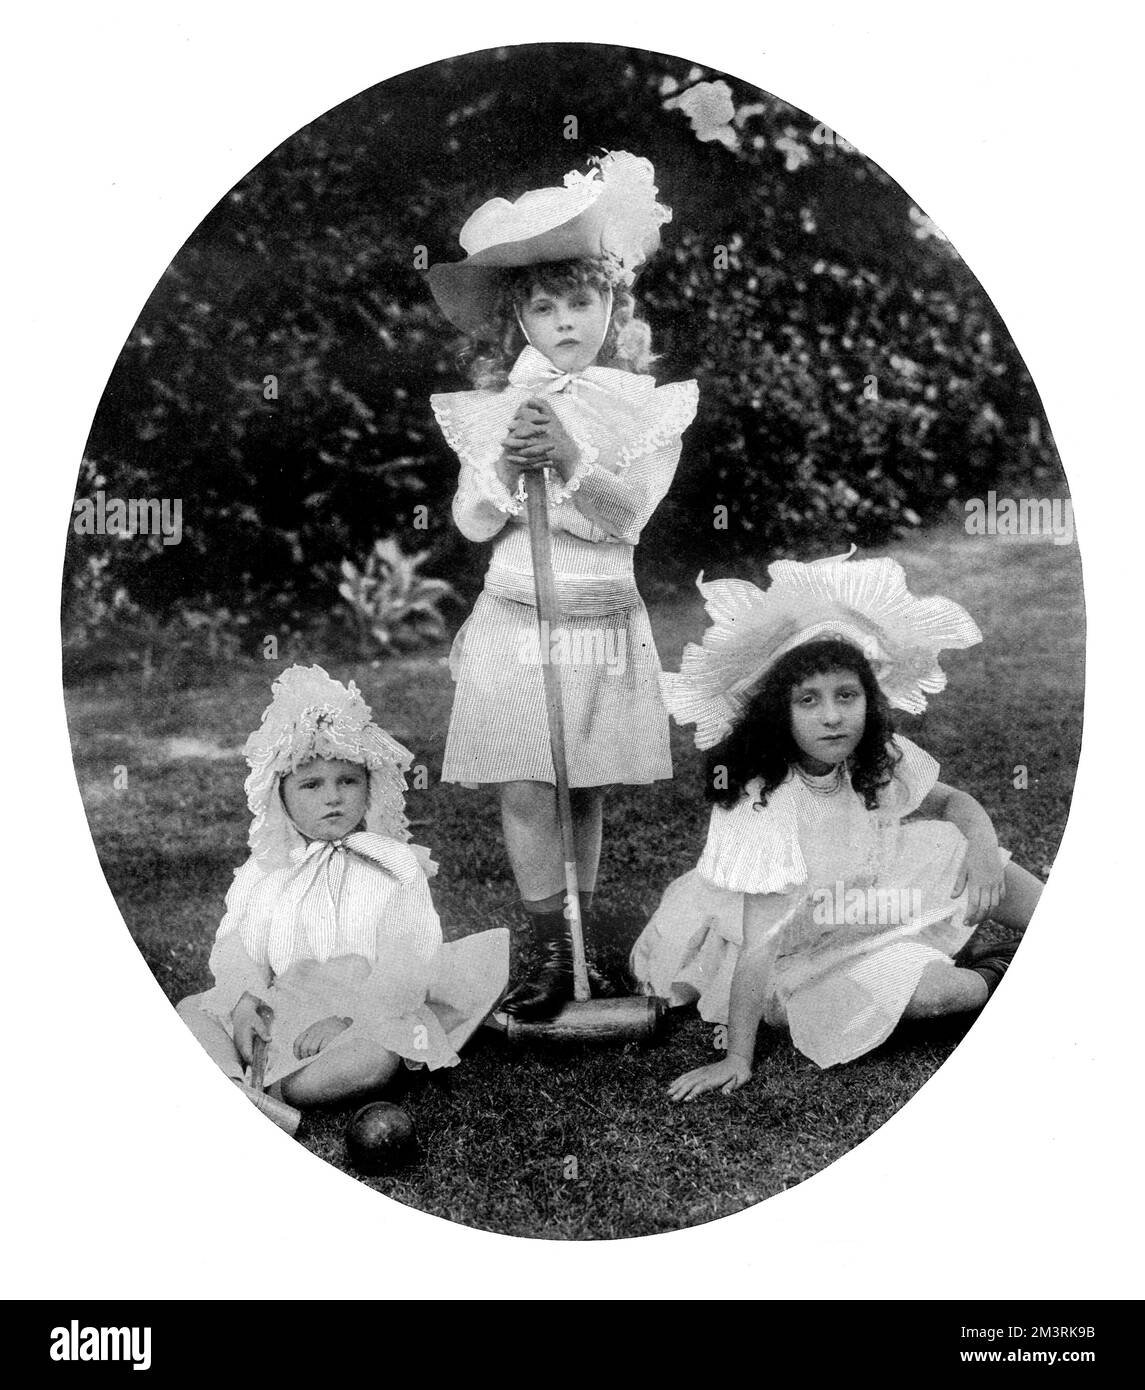 Gräfin Anastasia Michailowna aus Torby, CBE (1892-1977), anderweitig gestaltete Lady Zia Wernher, ältere Tochter von Großherzog Michael Michailowitsch aus Russland (stehend), abgebildet mit ihrer Schwester Nadejda (Nada) Michailowna Mountbatten, Marchionin von Milford Haven (1896-1963) auf der linken Seite. Auf der rechten Seite befindet sich Zoia de Stockl, Tochter von Baron de Stockl (Stoeckl), russischer Botschafter in den Vereinigten Staaten, aber zuvor gleichrangig mit Großherzog Michael. Zoia war eine Trauzeugin der letzten russischen Kaiserin, Alexandra Feodorowna, Ehefrau von Zar Nicholas II 1899 Stockfoto